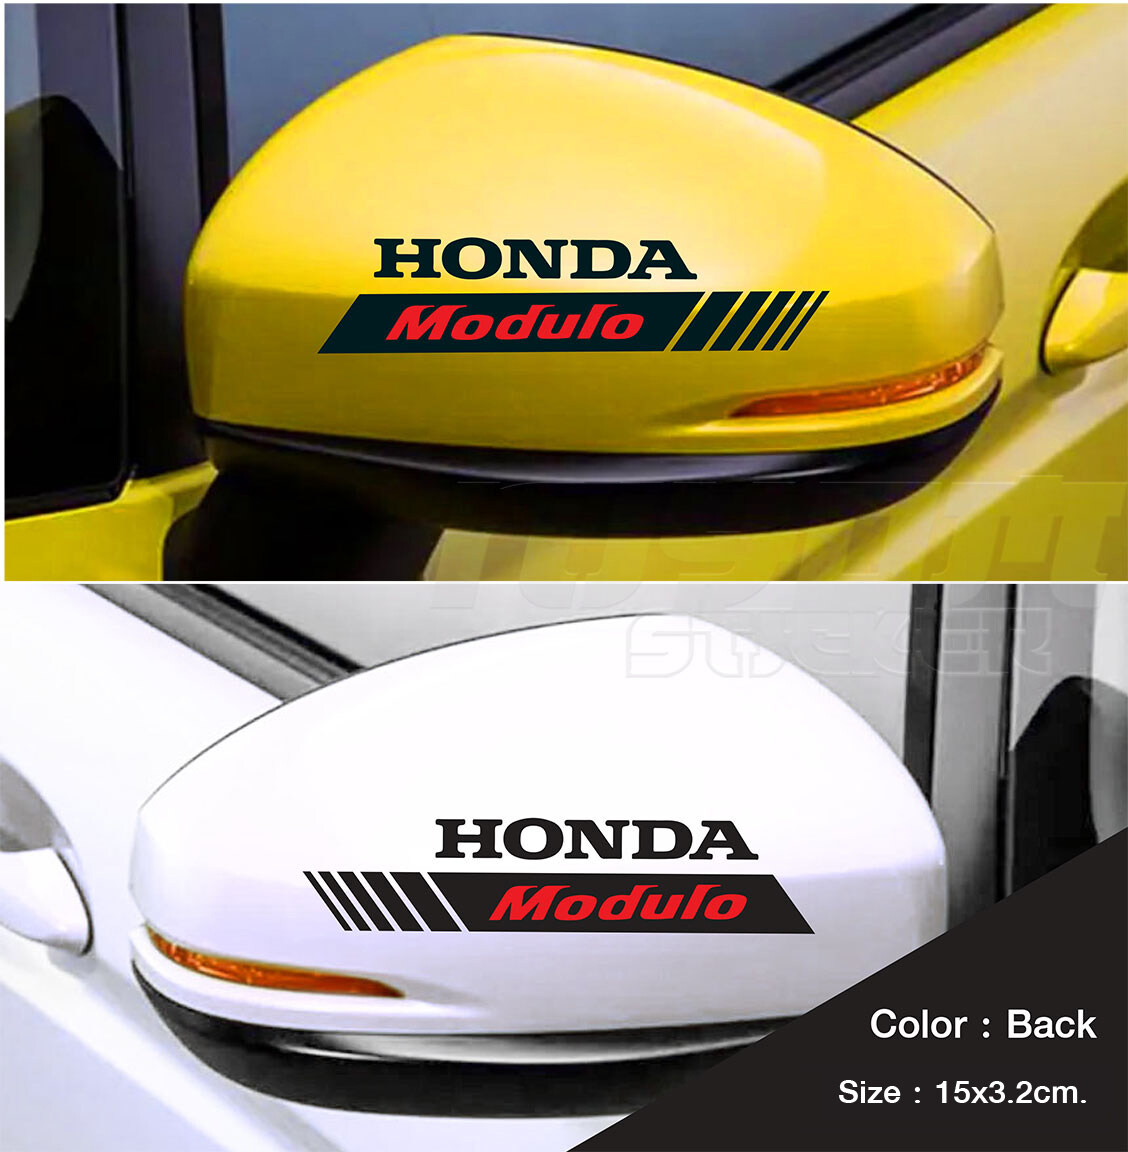 สติ๊กเกอร์ติดรถฮอนด้า  สติ๊กเกอร์ติดกระจกมองข้าง HONDA Modulo  อุปกรณ์แต่งรถ รถแต่ง รถซิ่ง Car Stickers